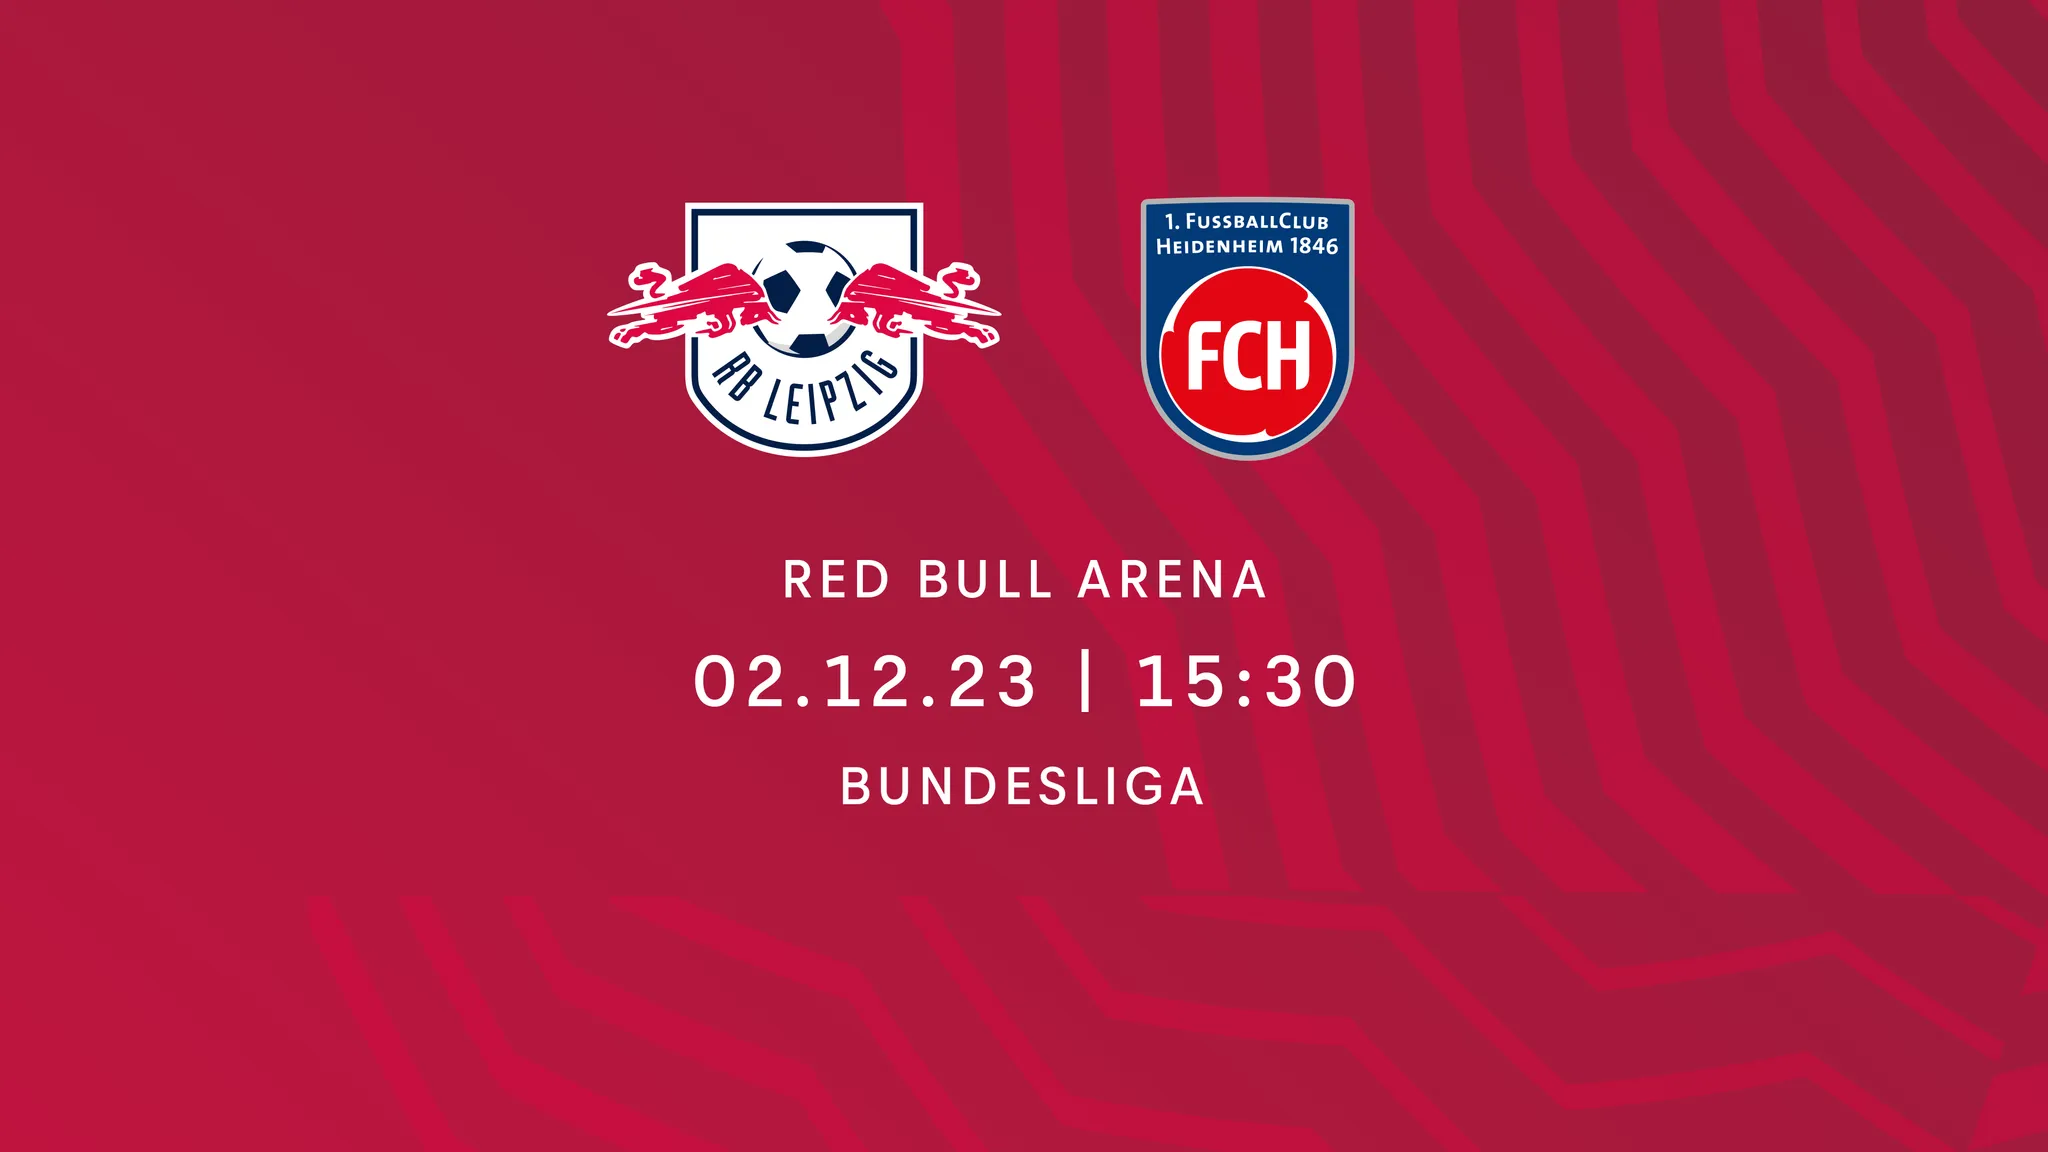 RB Leipzig erwartet zum Heimspiel am 02. Dezember den 1. FC Heidenheim in der Red Bull Arena.